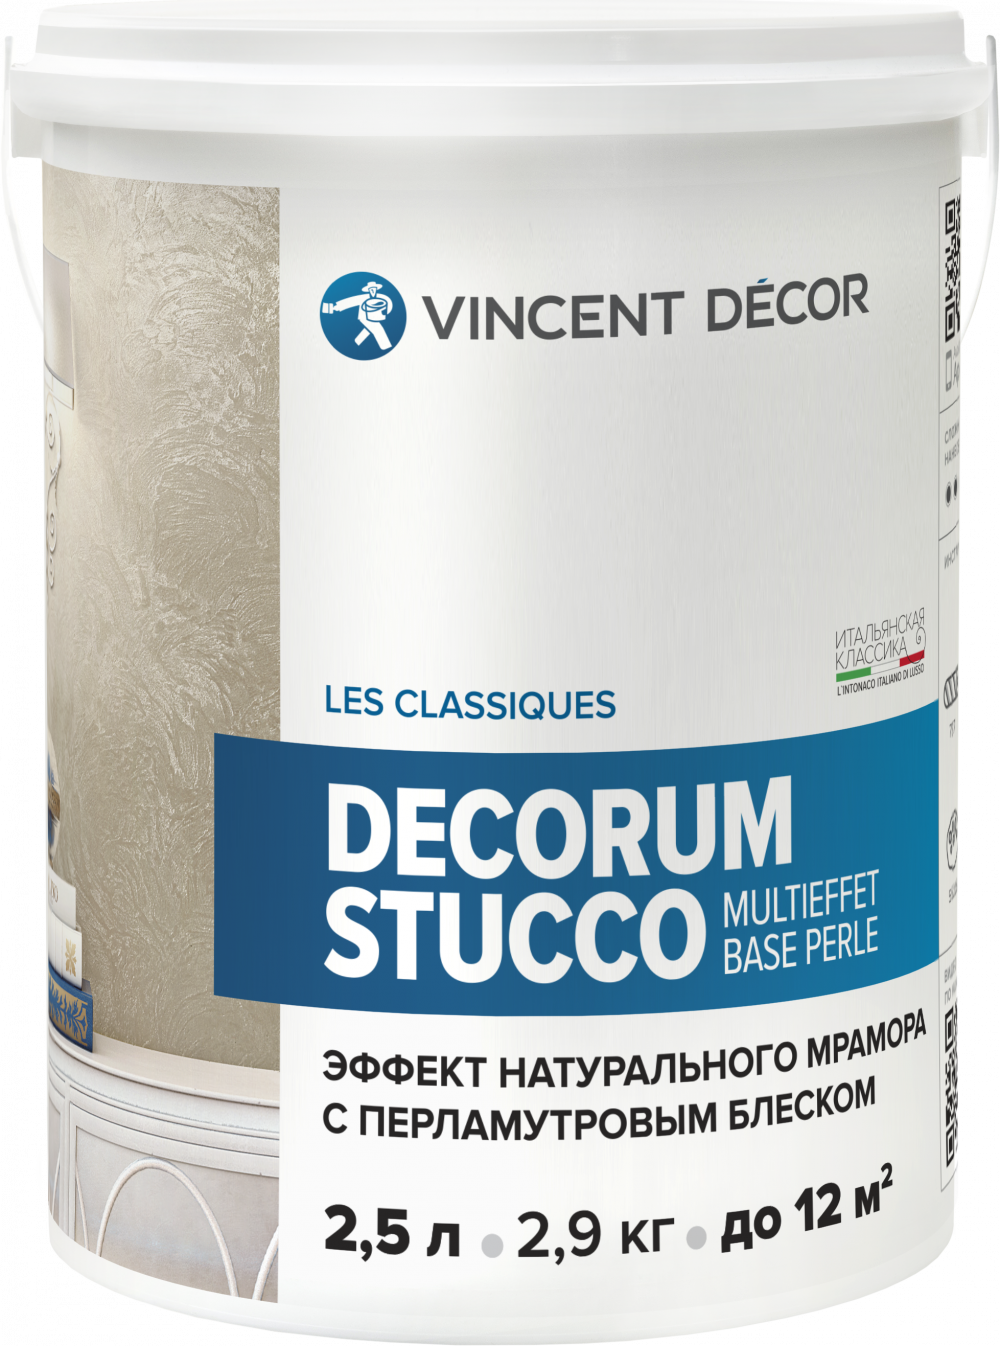 фото Vincent decor decorum stucco multieffet base perl штукатурка венецианская перламутровая